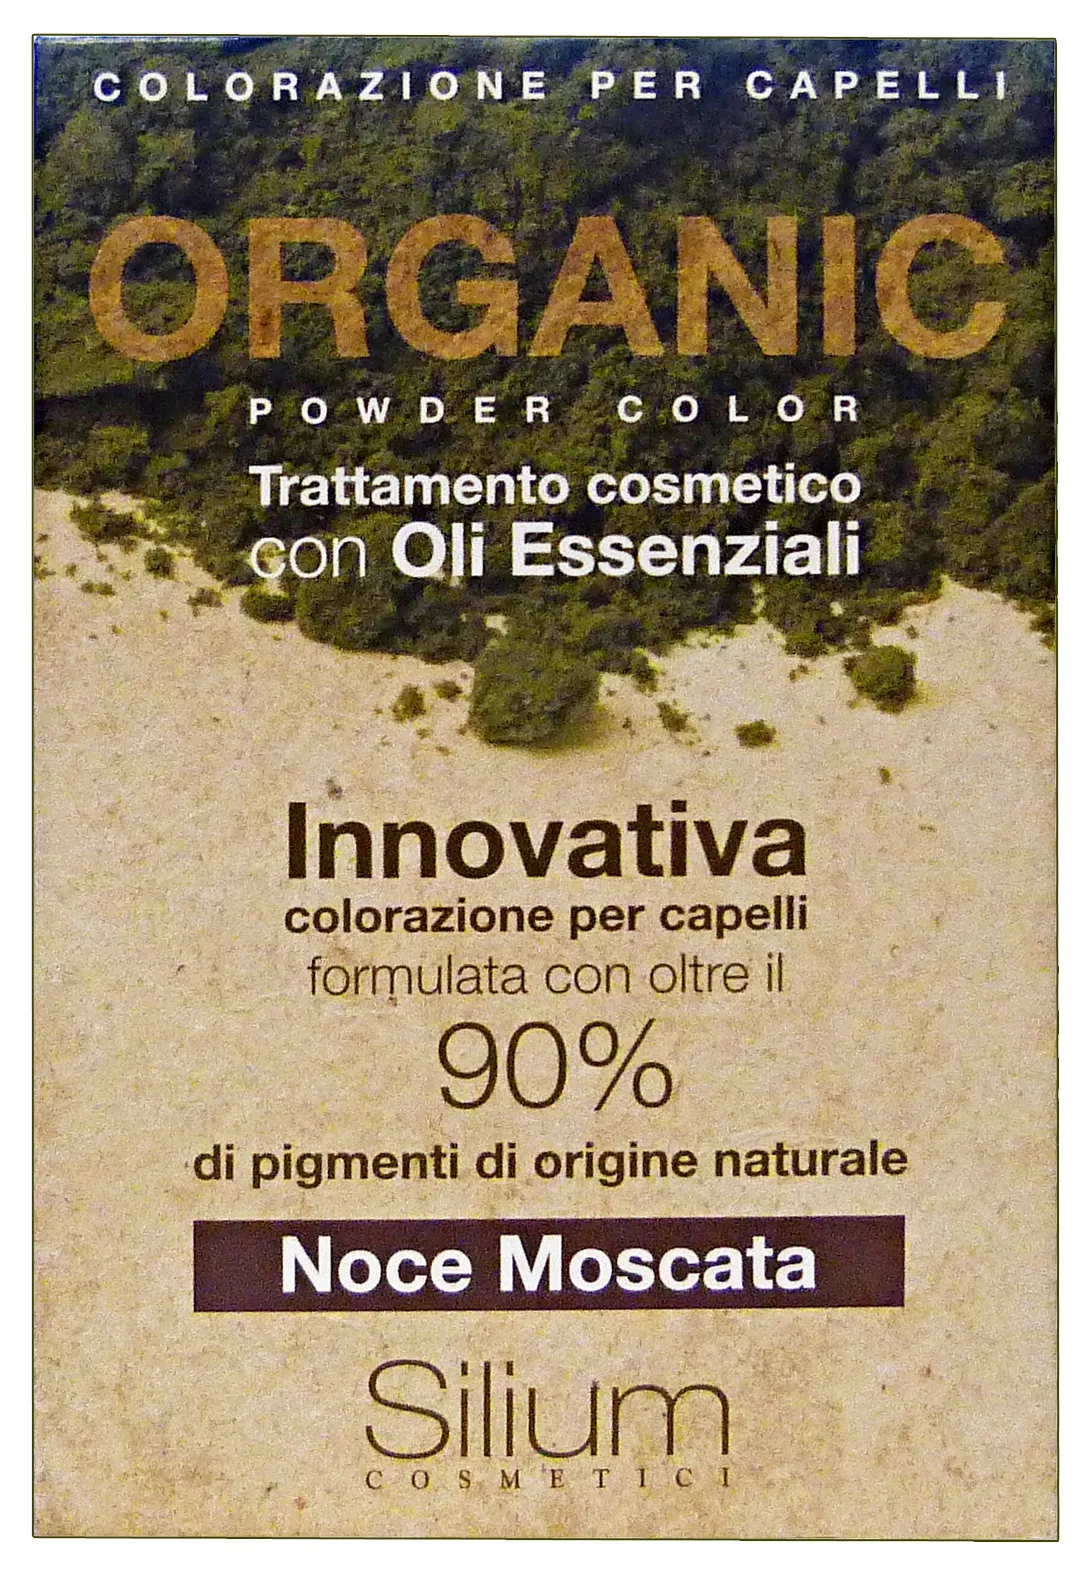 "SILIUM Organic polvere colorante noce moscata - coloranti capelli"